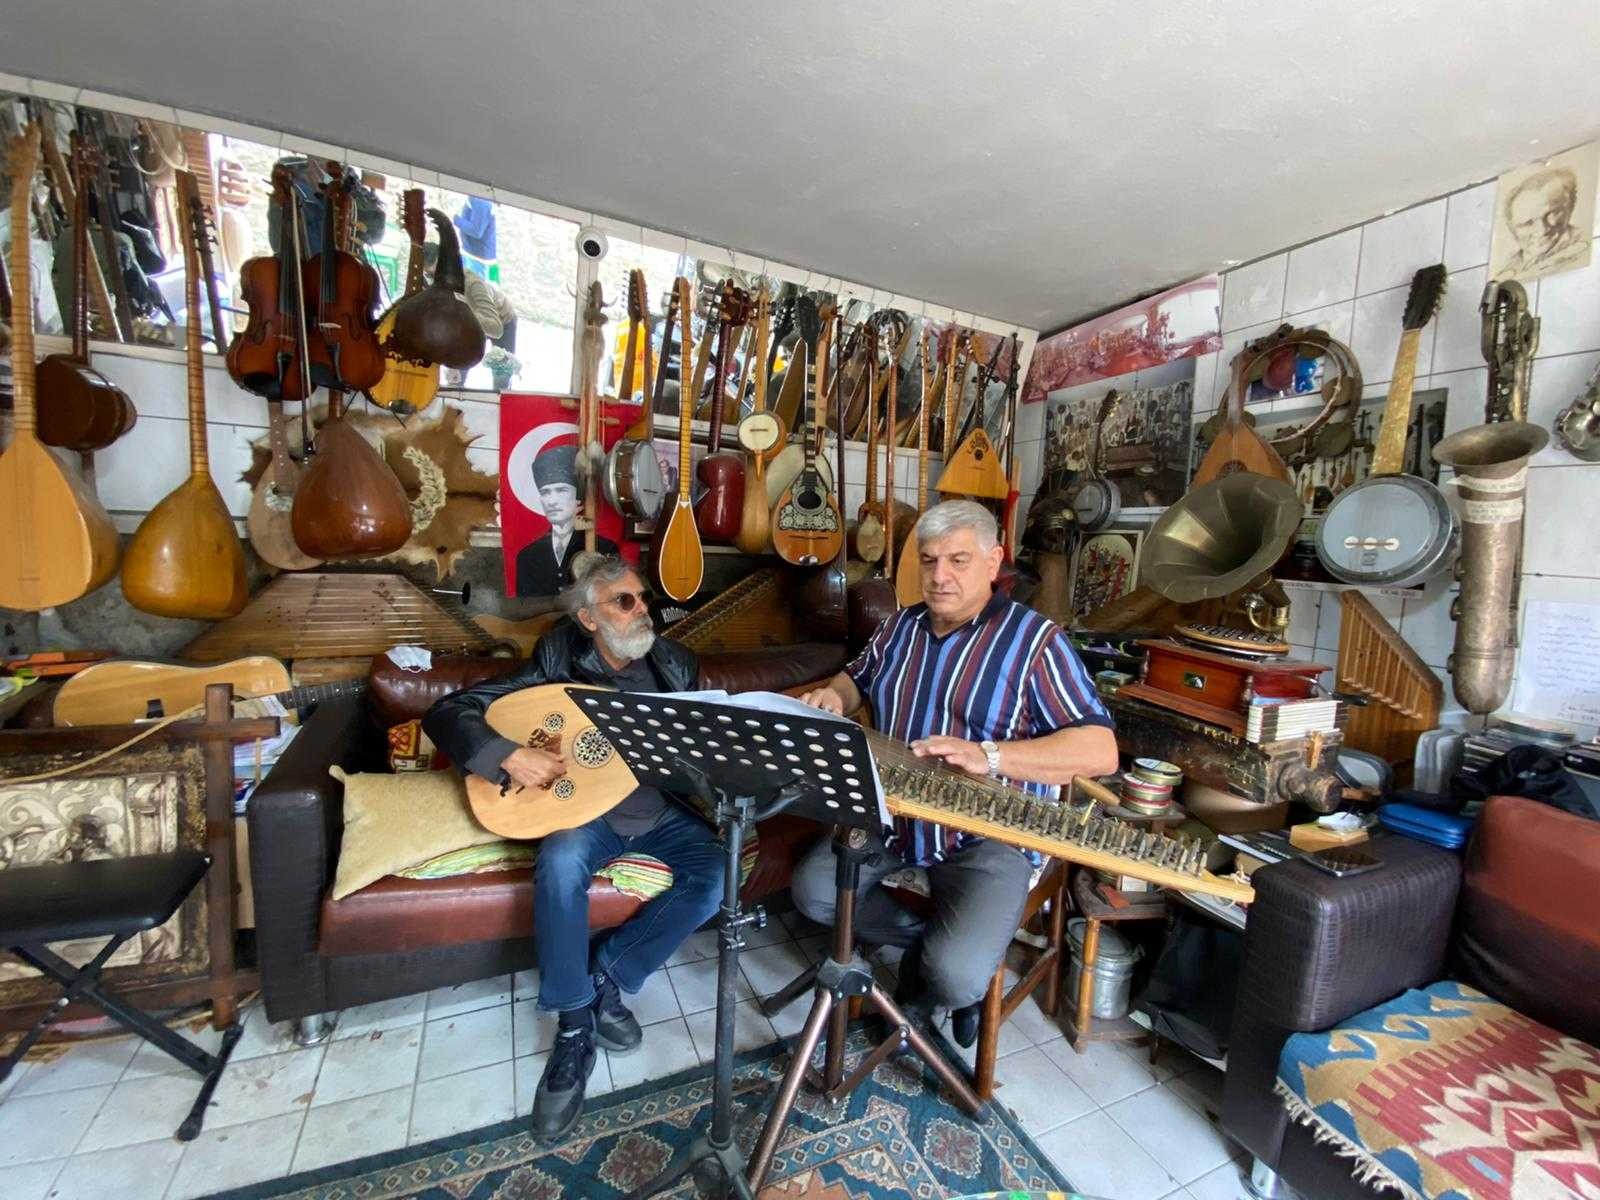 (Özel) 25 yıl önce bir kanunla başlayan müzik merakıyla evini müzeye çevirdi #istanbul